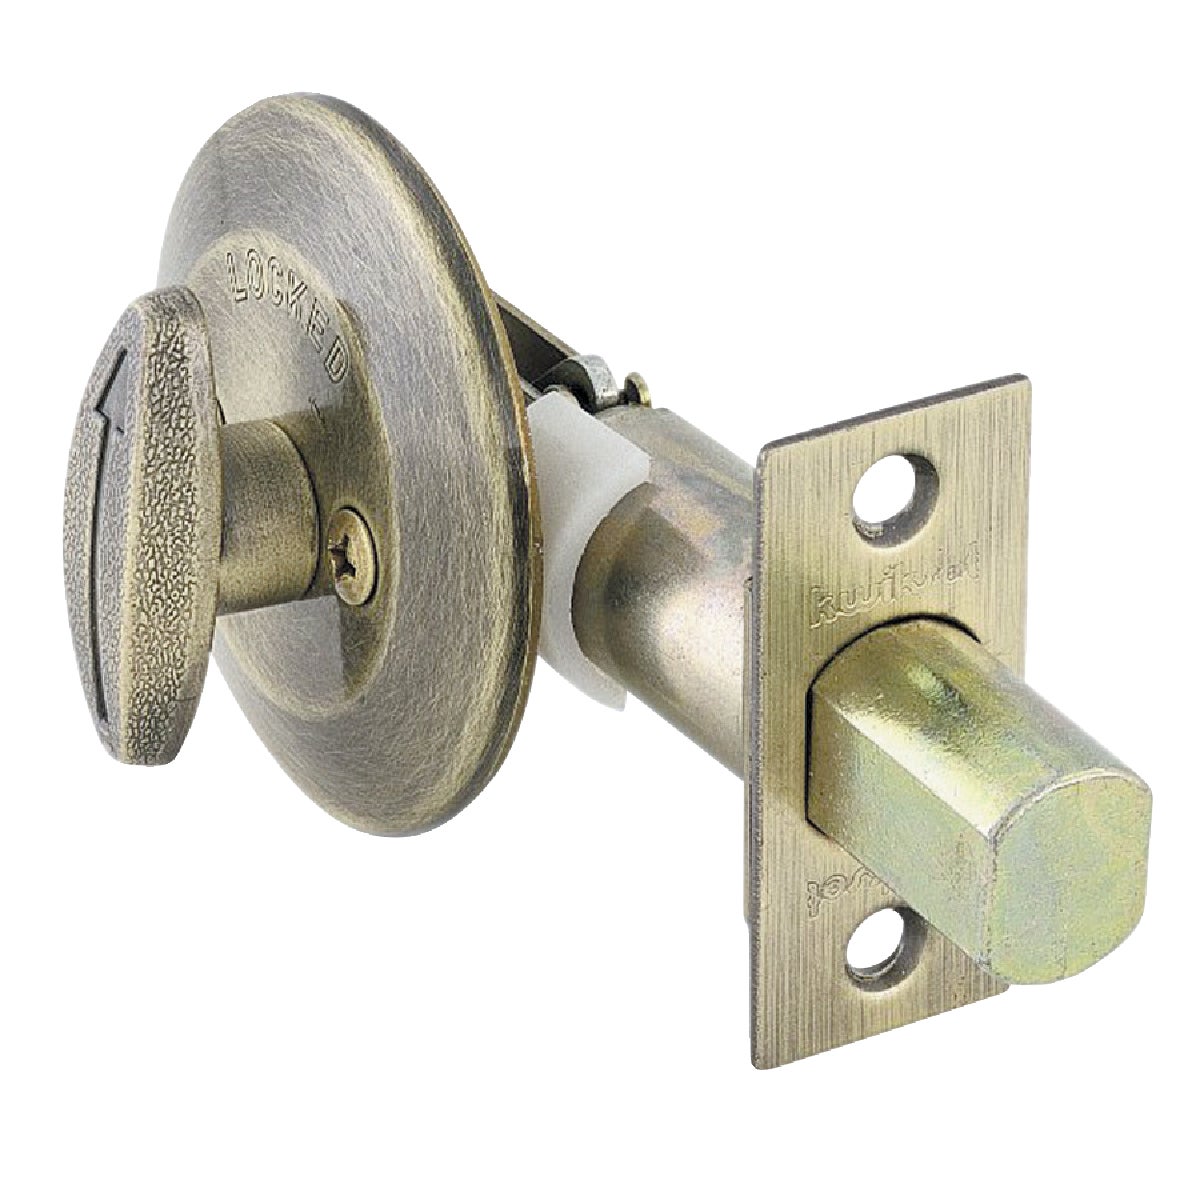 Single Sided Deadbolt Lock